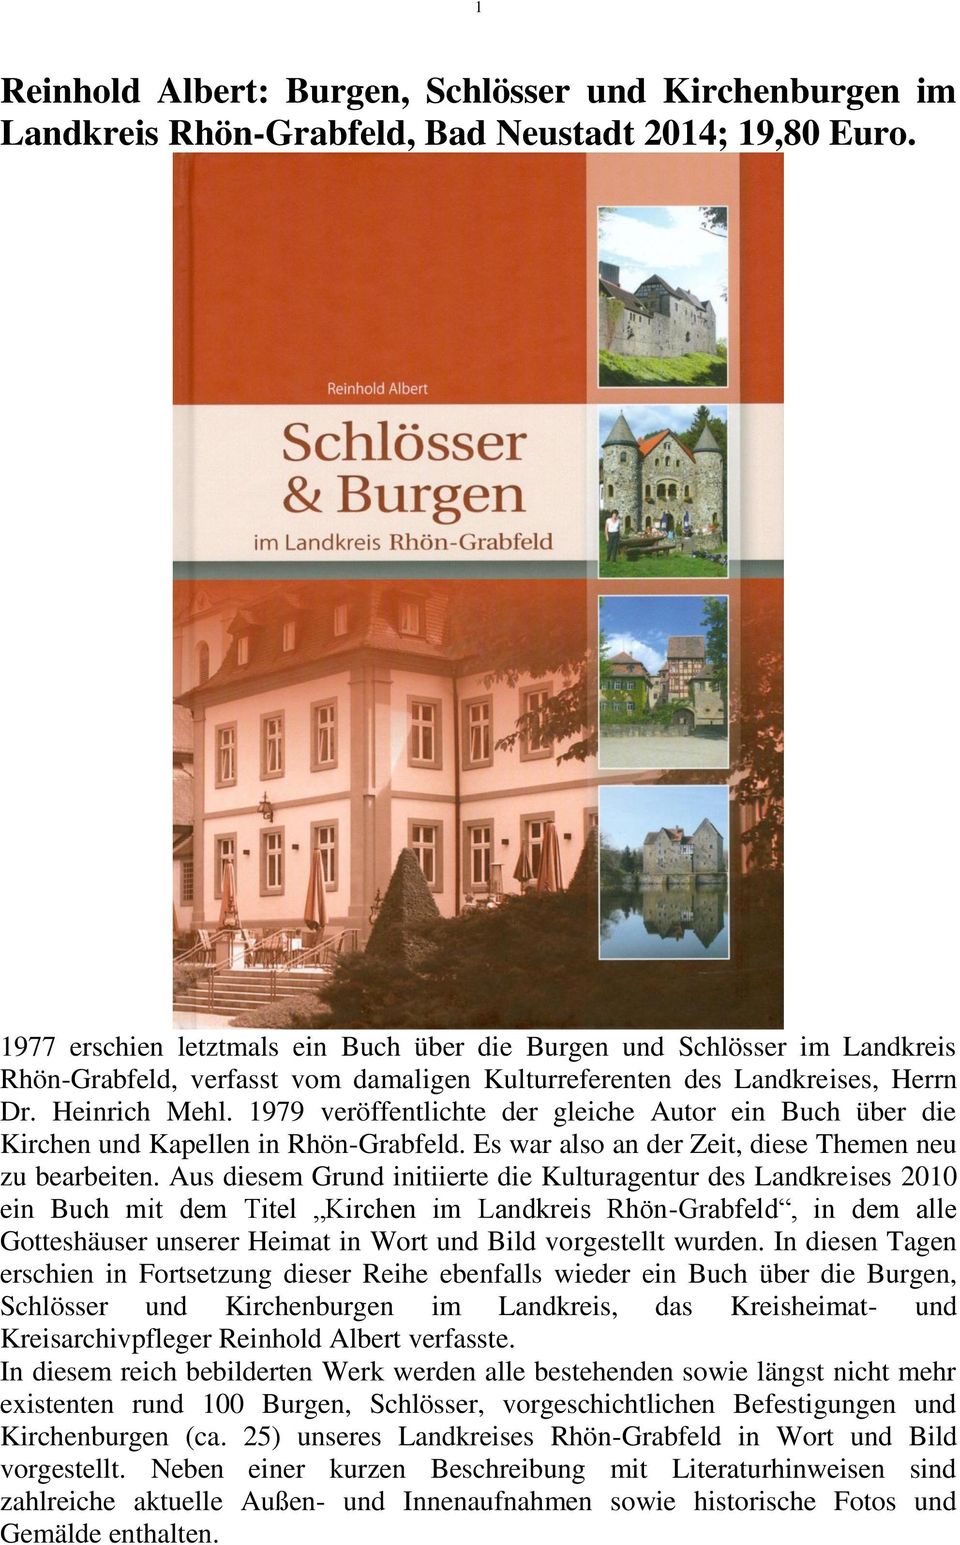 1979 veröffentlichte der gleiche Autor ein Buch über die Kirchen und Kapellen in Rhön-Grabfeld. Es war also an der Zeit, diese Themen neu zu bearbeiten.